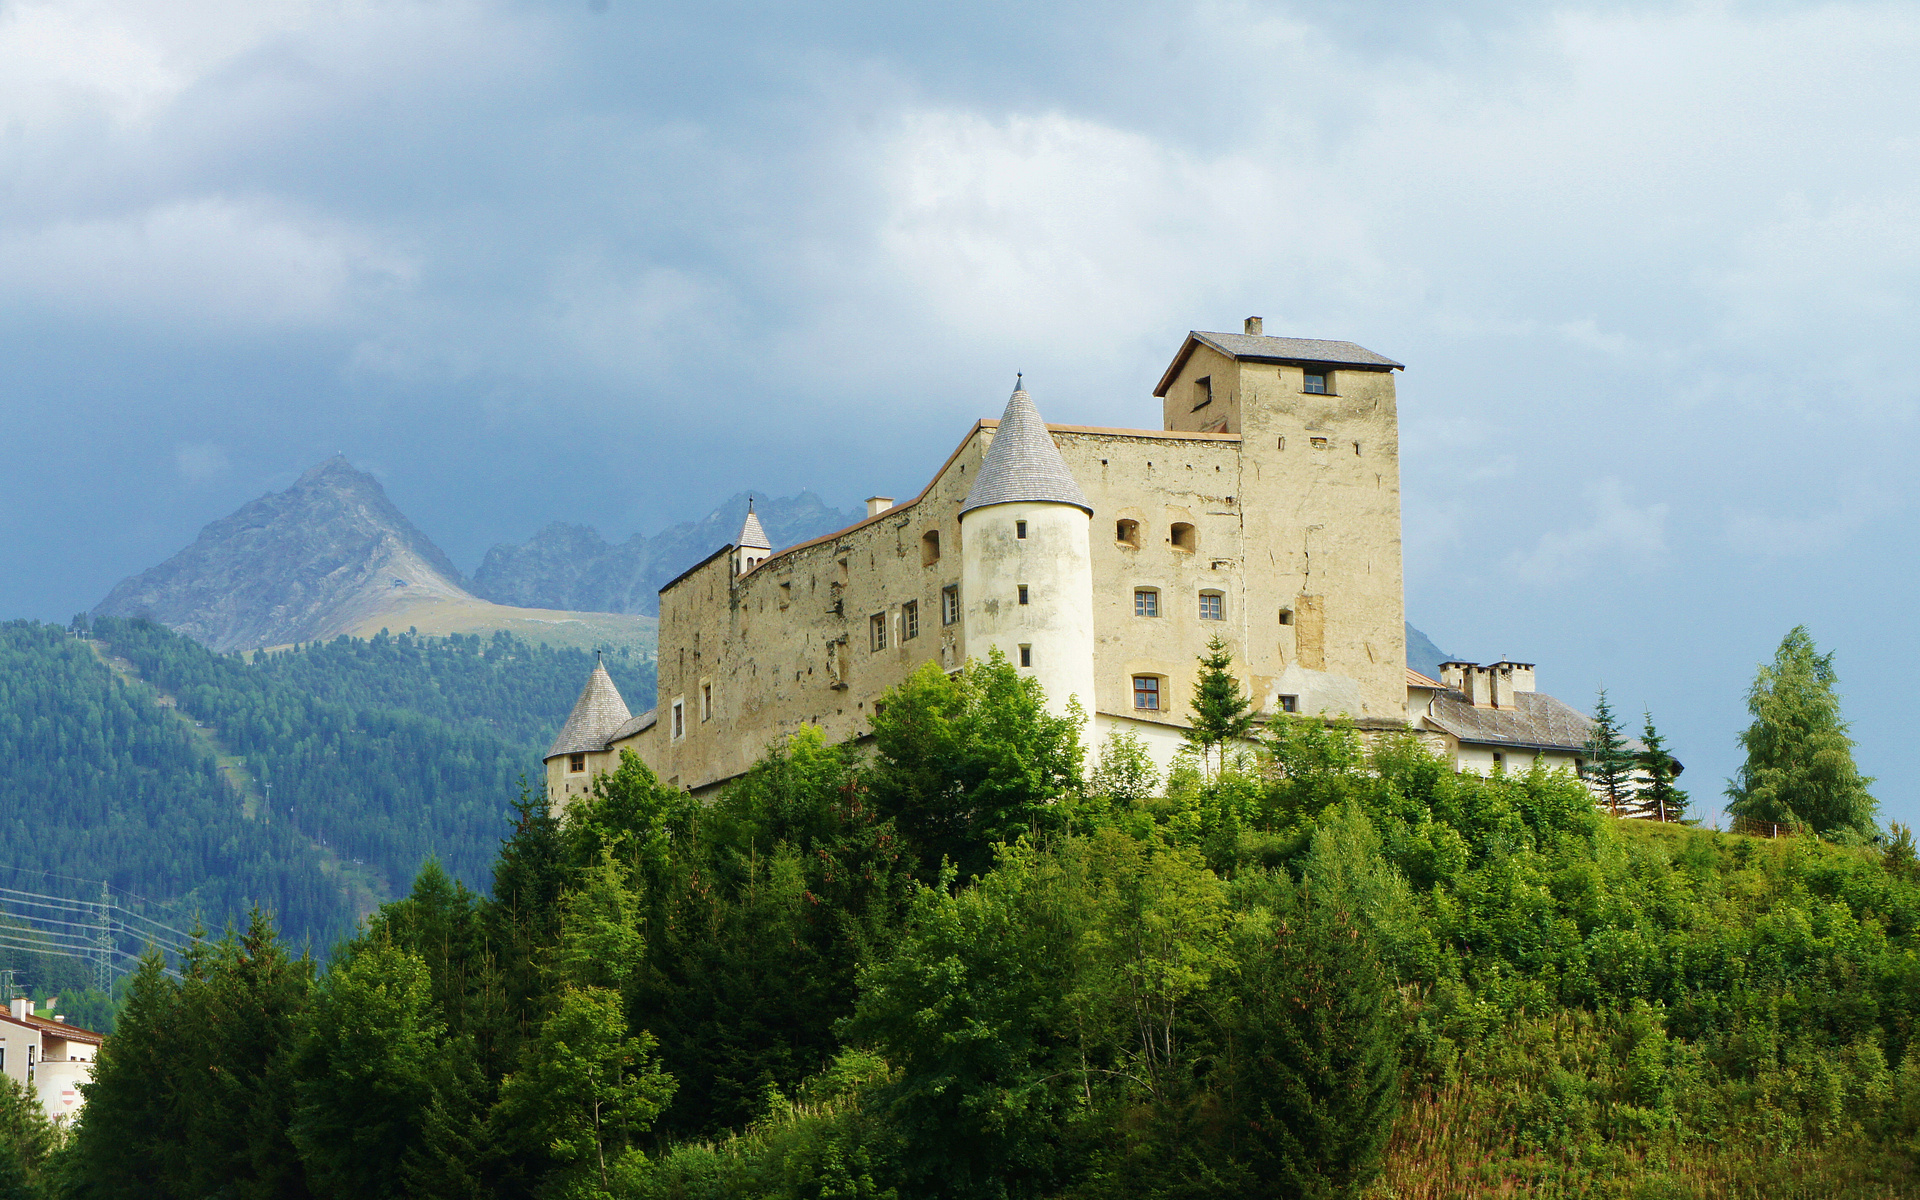 castello, Austria, Castle, Mountains, Trees, Landscape Wallpaper